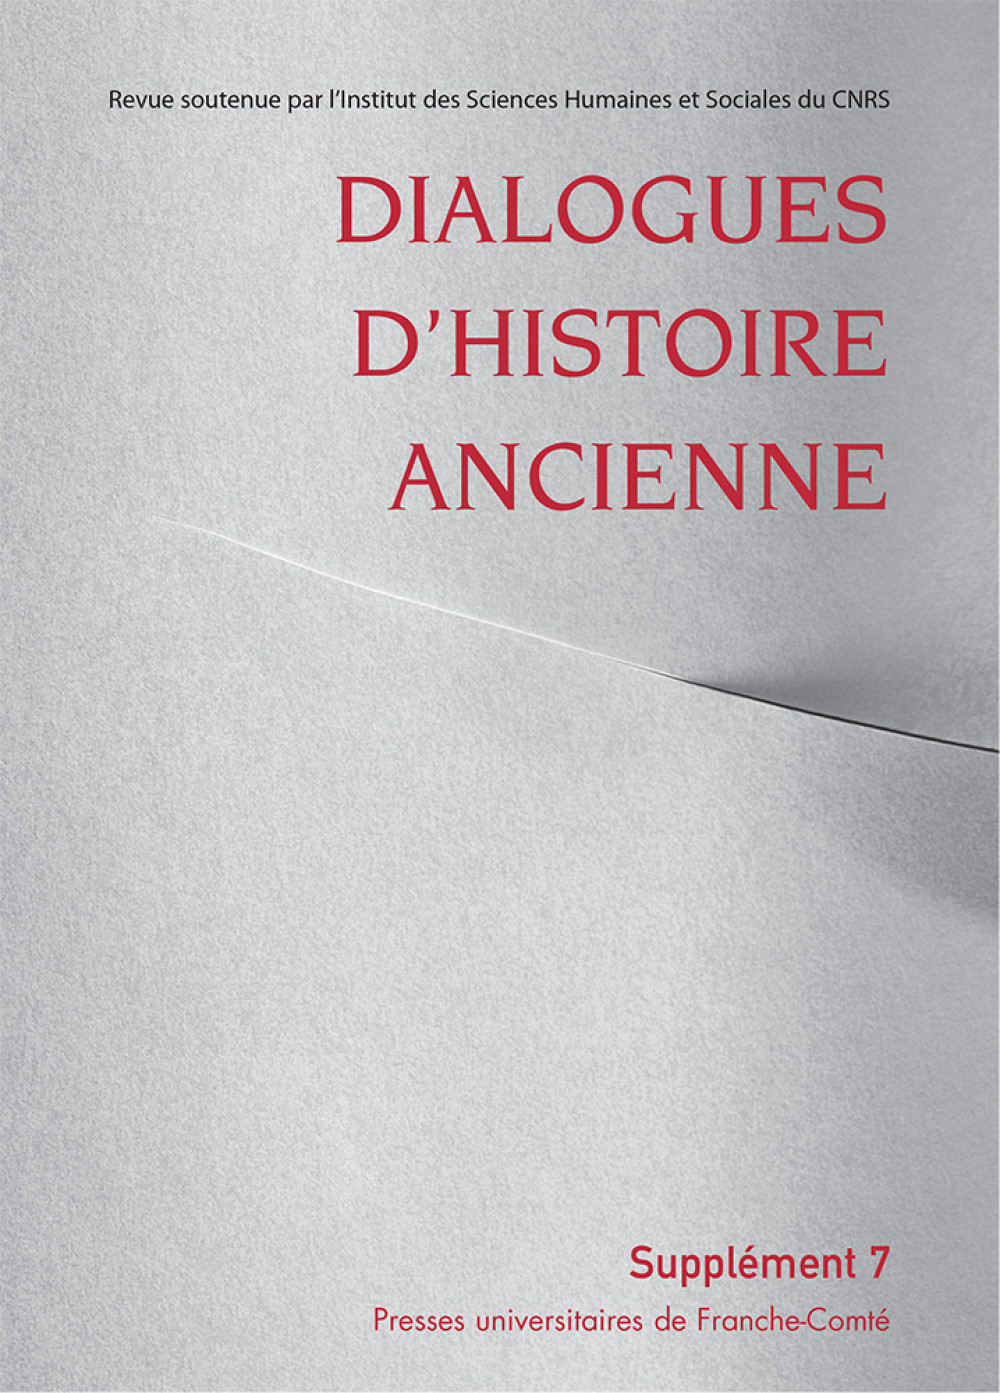 Dialogues d'Histoire Ancienne supplément 7